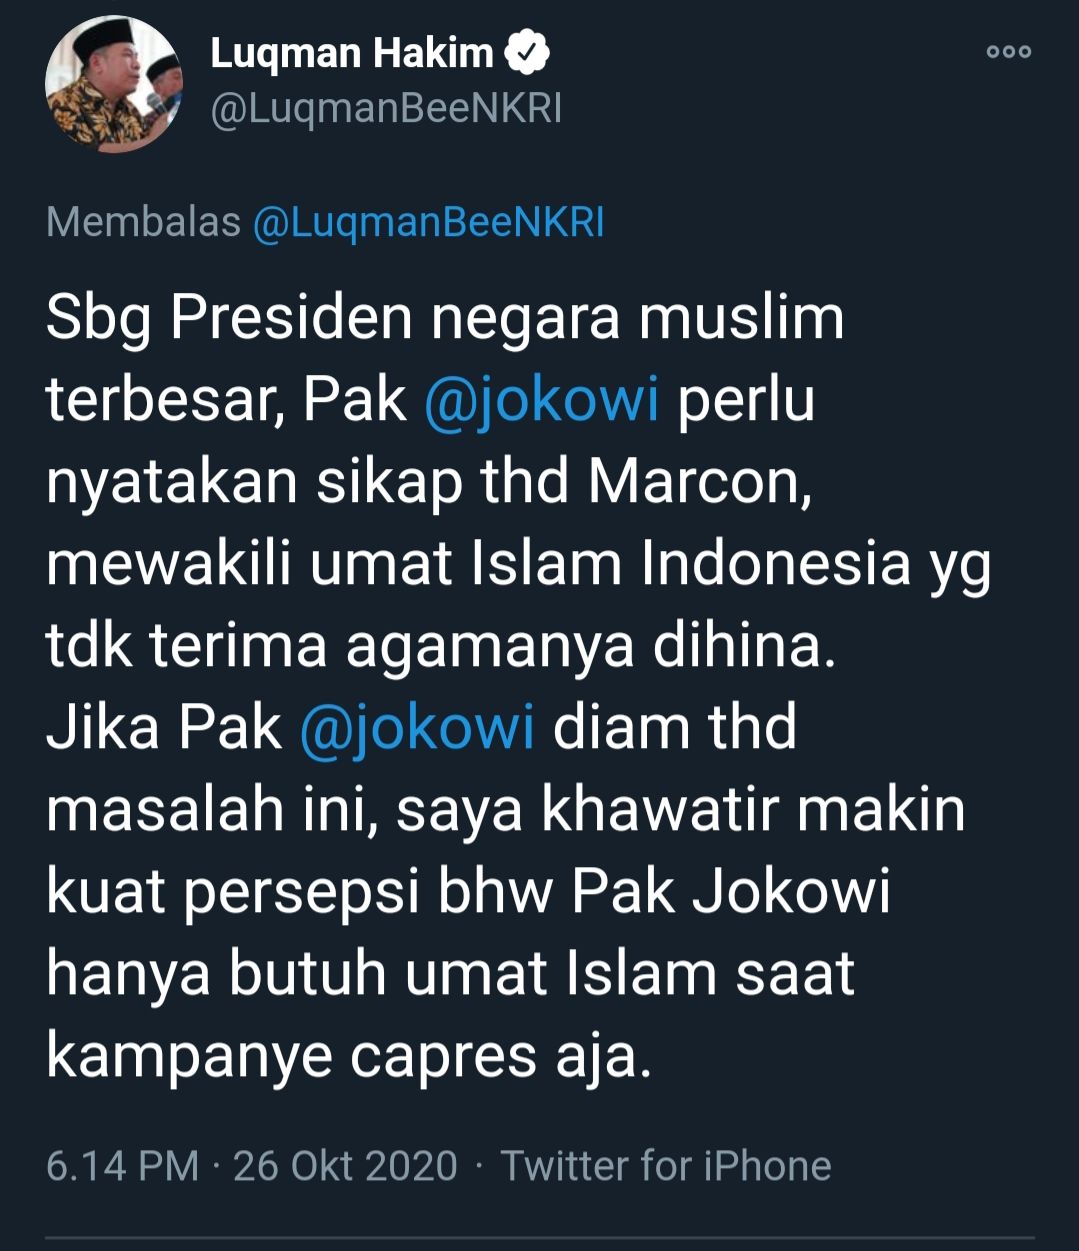 Postingan Luqman Hakim di Twitter